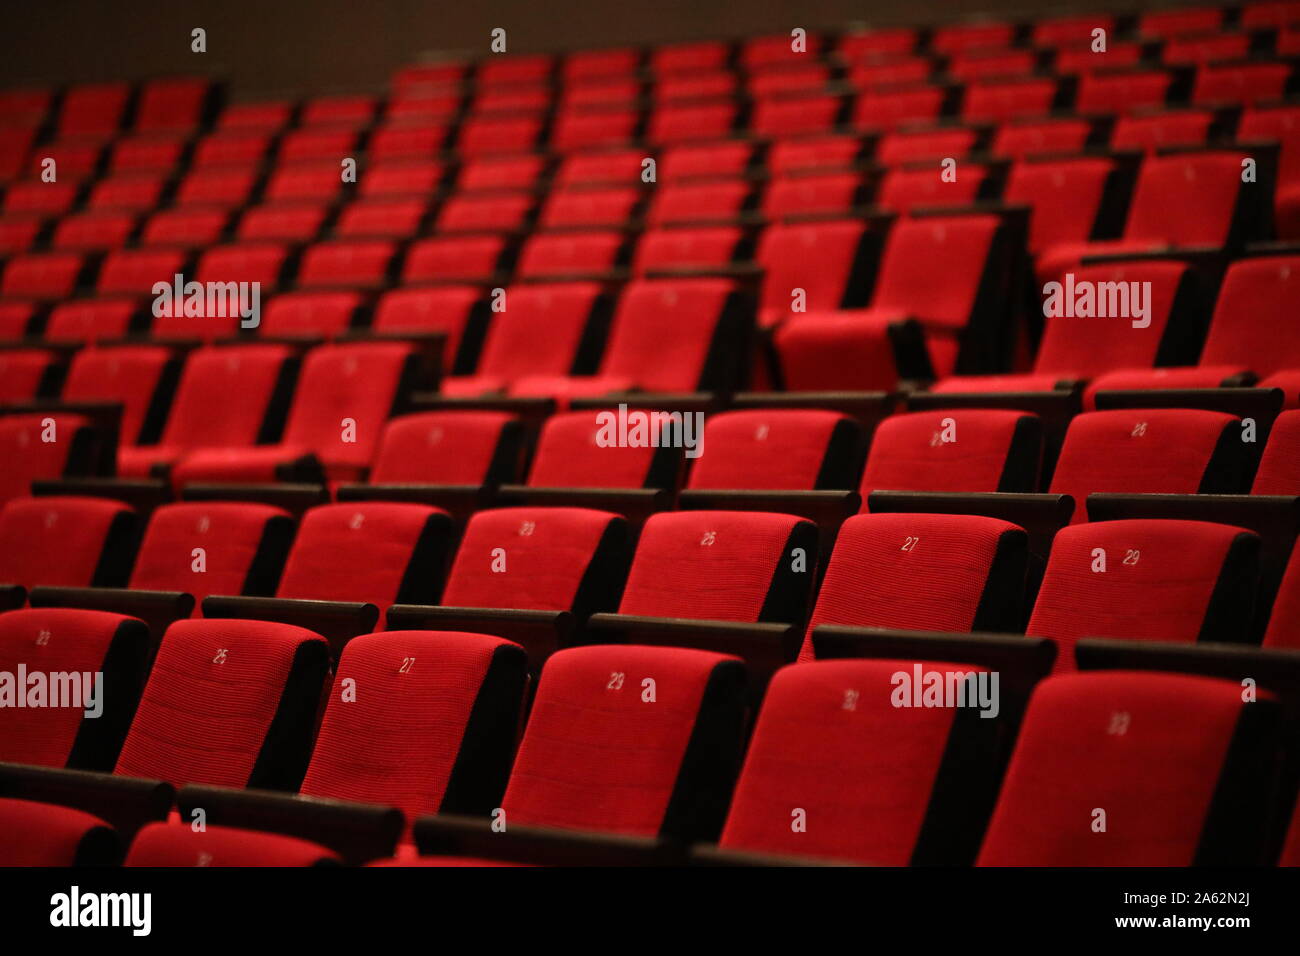 Teatro Auditorium del Centro Nazionale per le Arti dello Spettacolo 2019 Pechino Cina interno 2019 Foto Stock